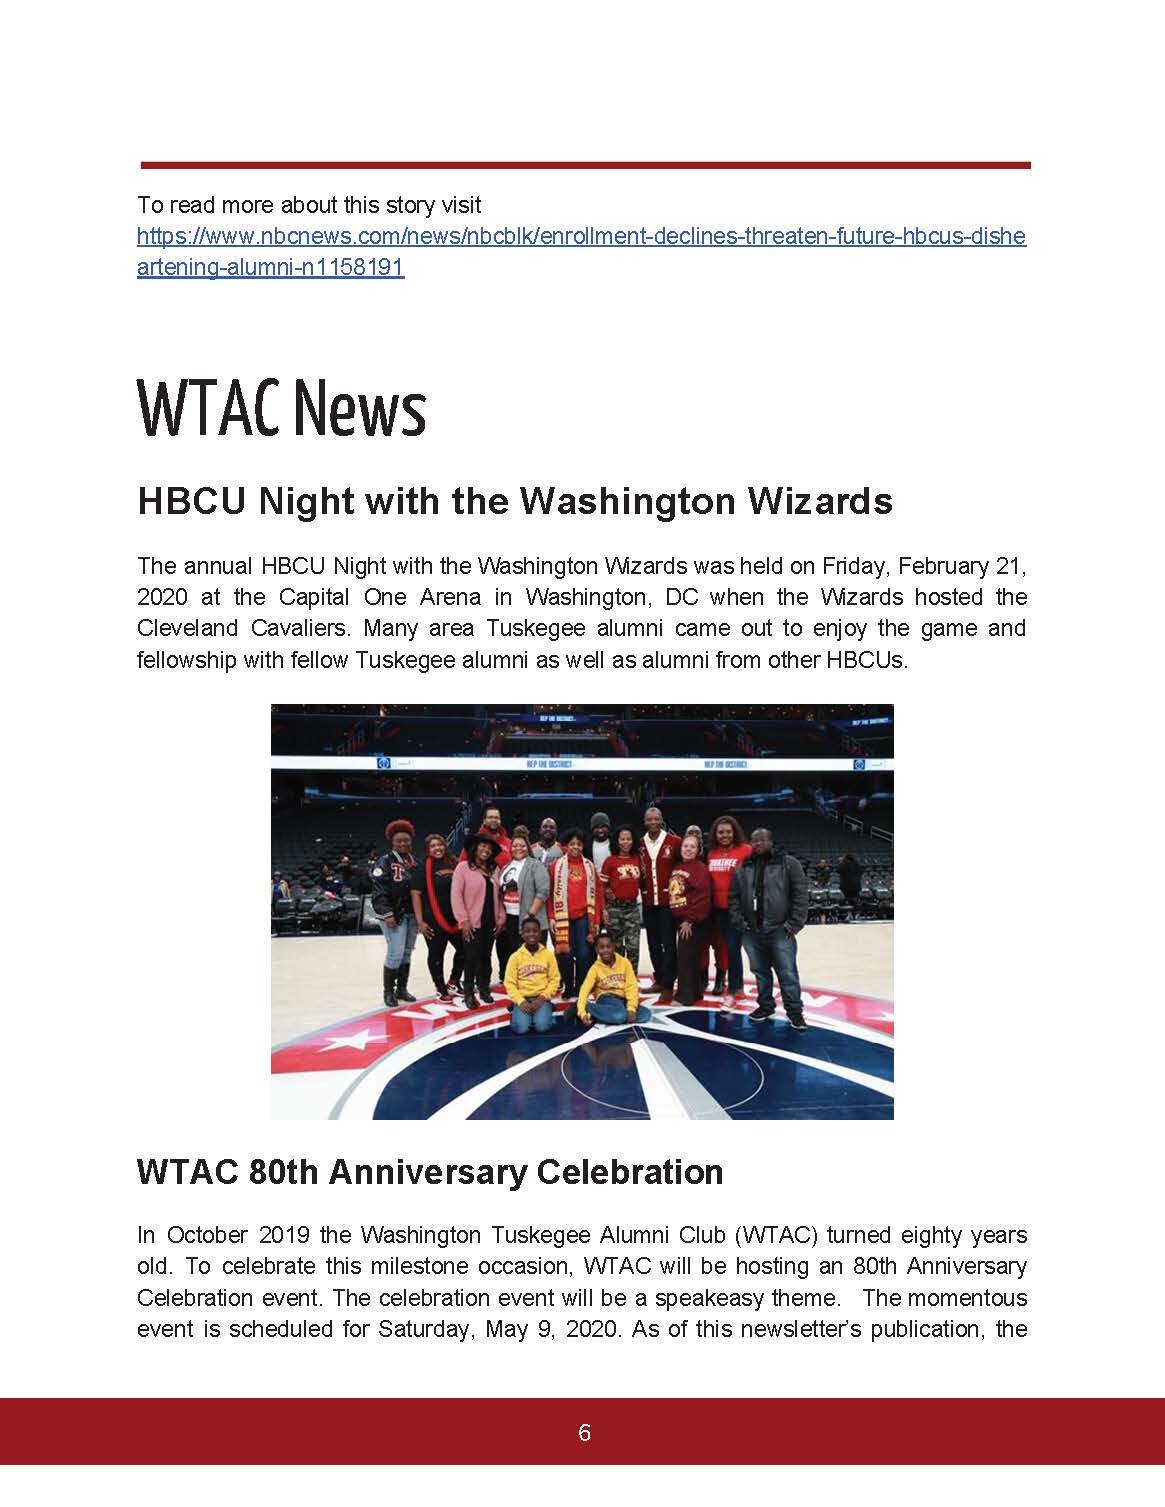 WTAC-Newsletter-April-2020_Page_06.jpg